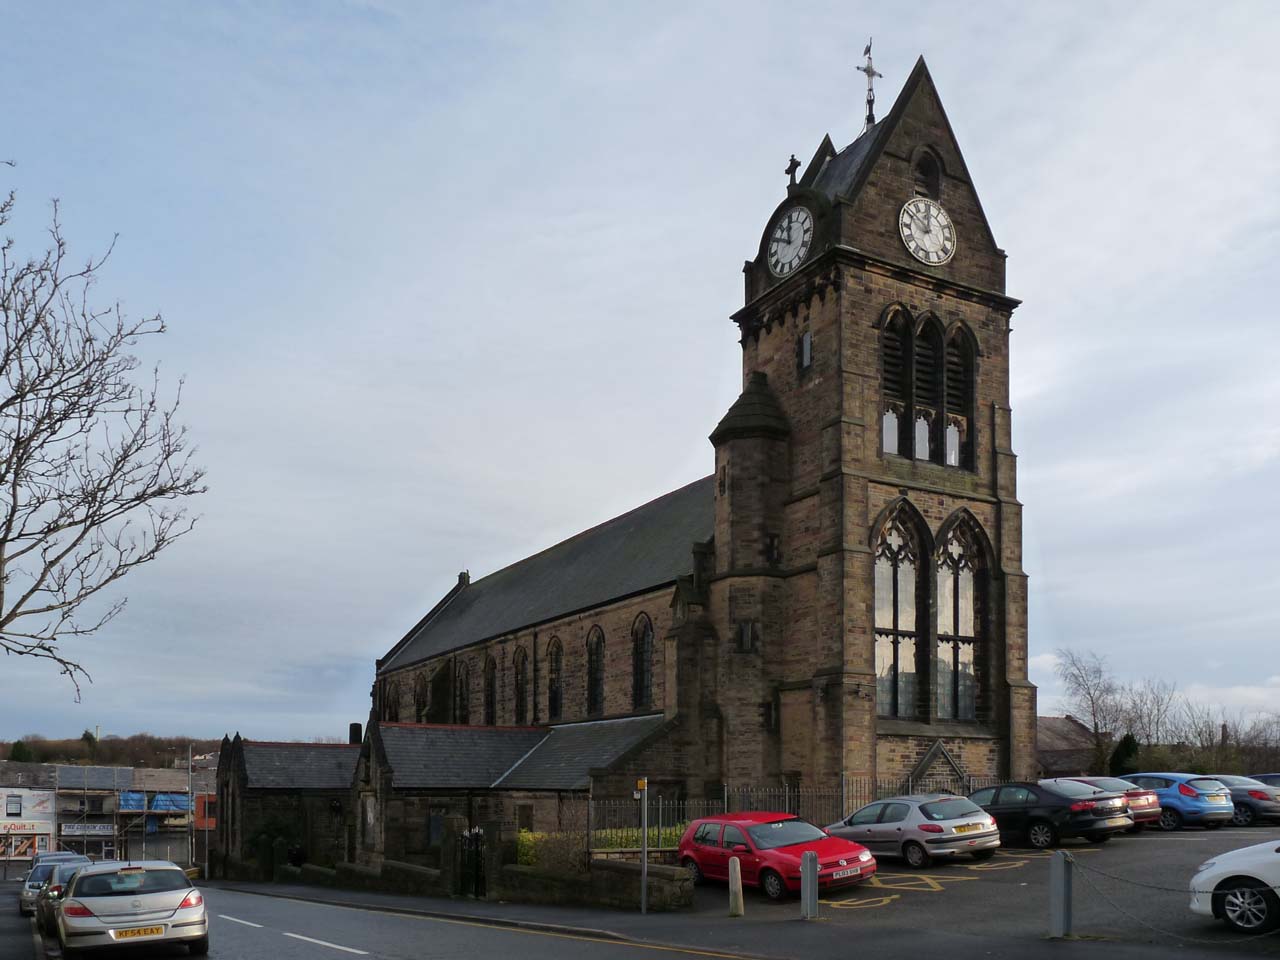 The Church of St Cuthbert